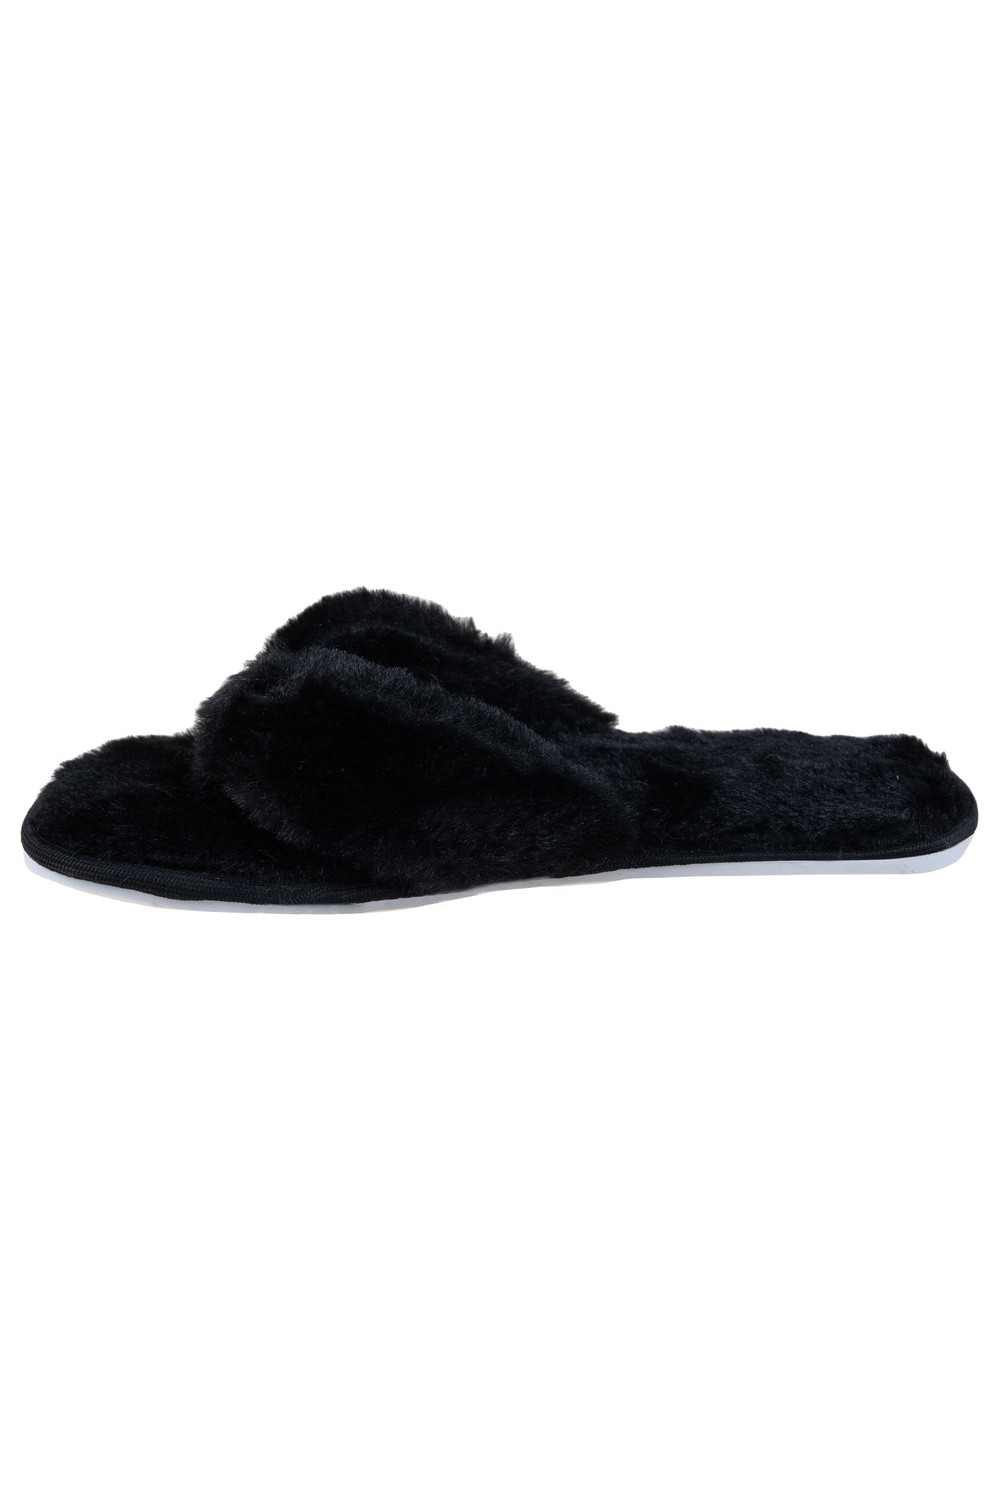 Slippers fur flip-flops black black | WOMEN \ Slippers | Filippo